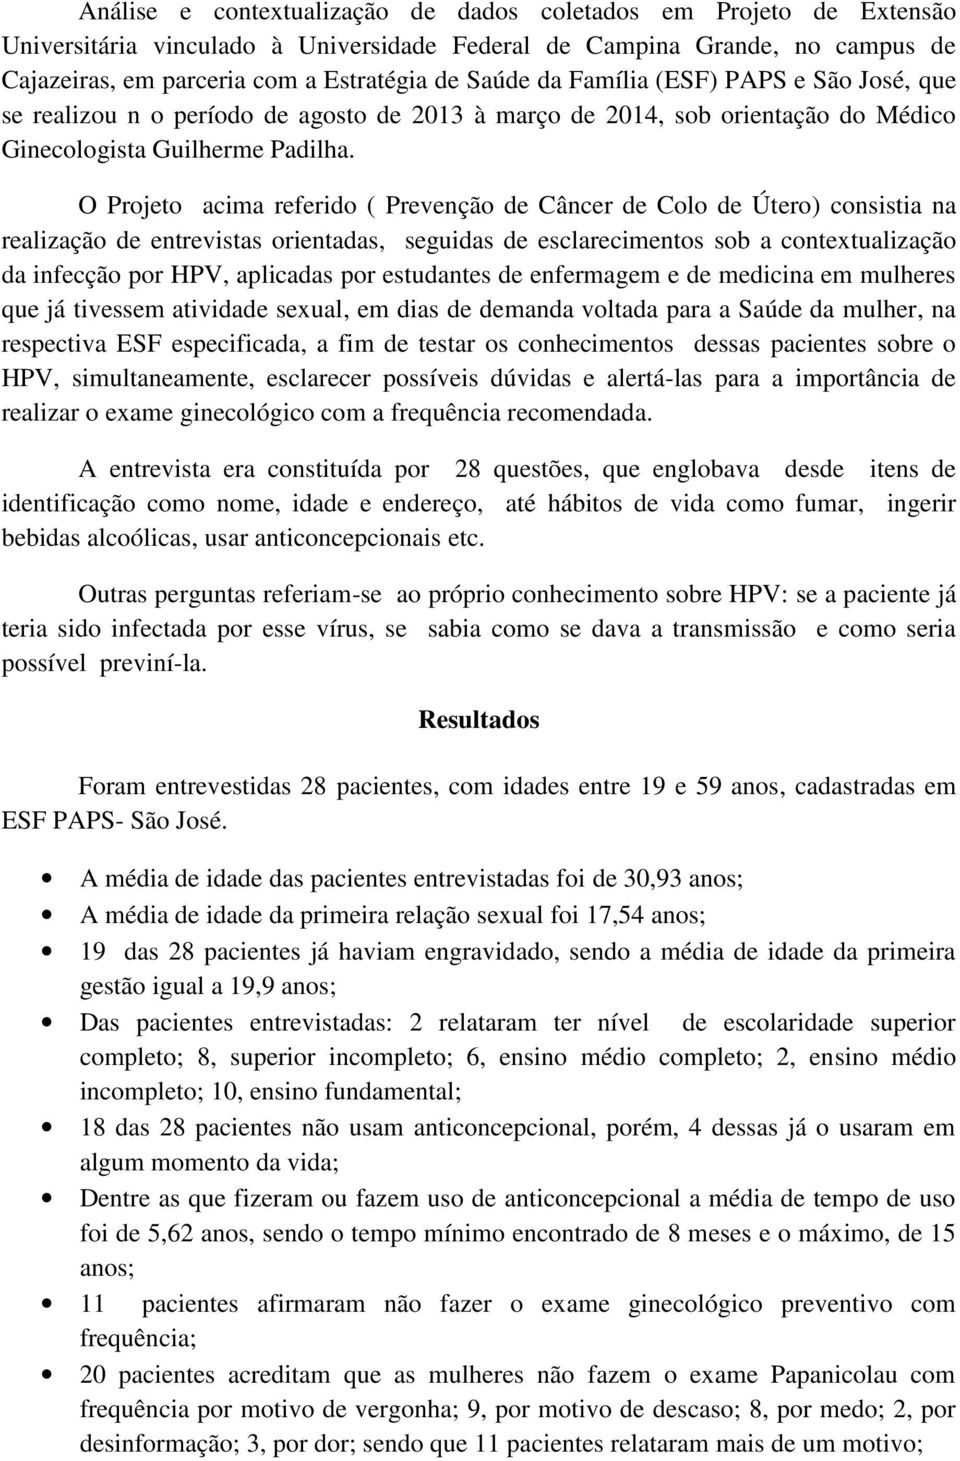 O Projeto acima referido ( Prevenção de Câncer de Colo de Útero) consistia na realização de entrevistas orientadas, seguidas de esclarecimentos sob a contextualização da infecção por HPV, aplicadas